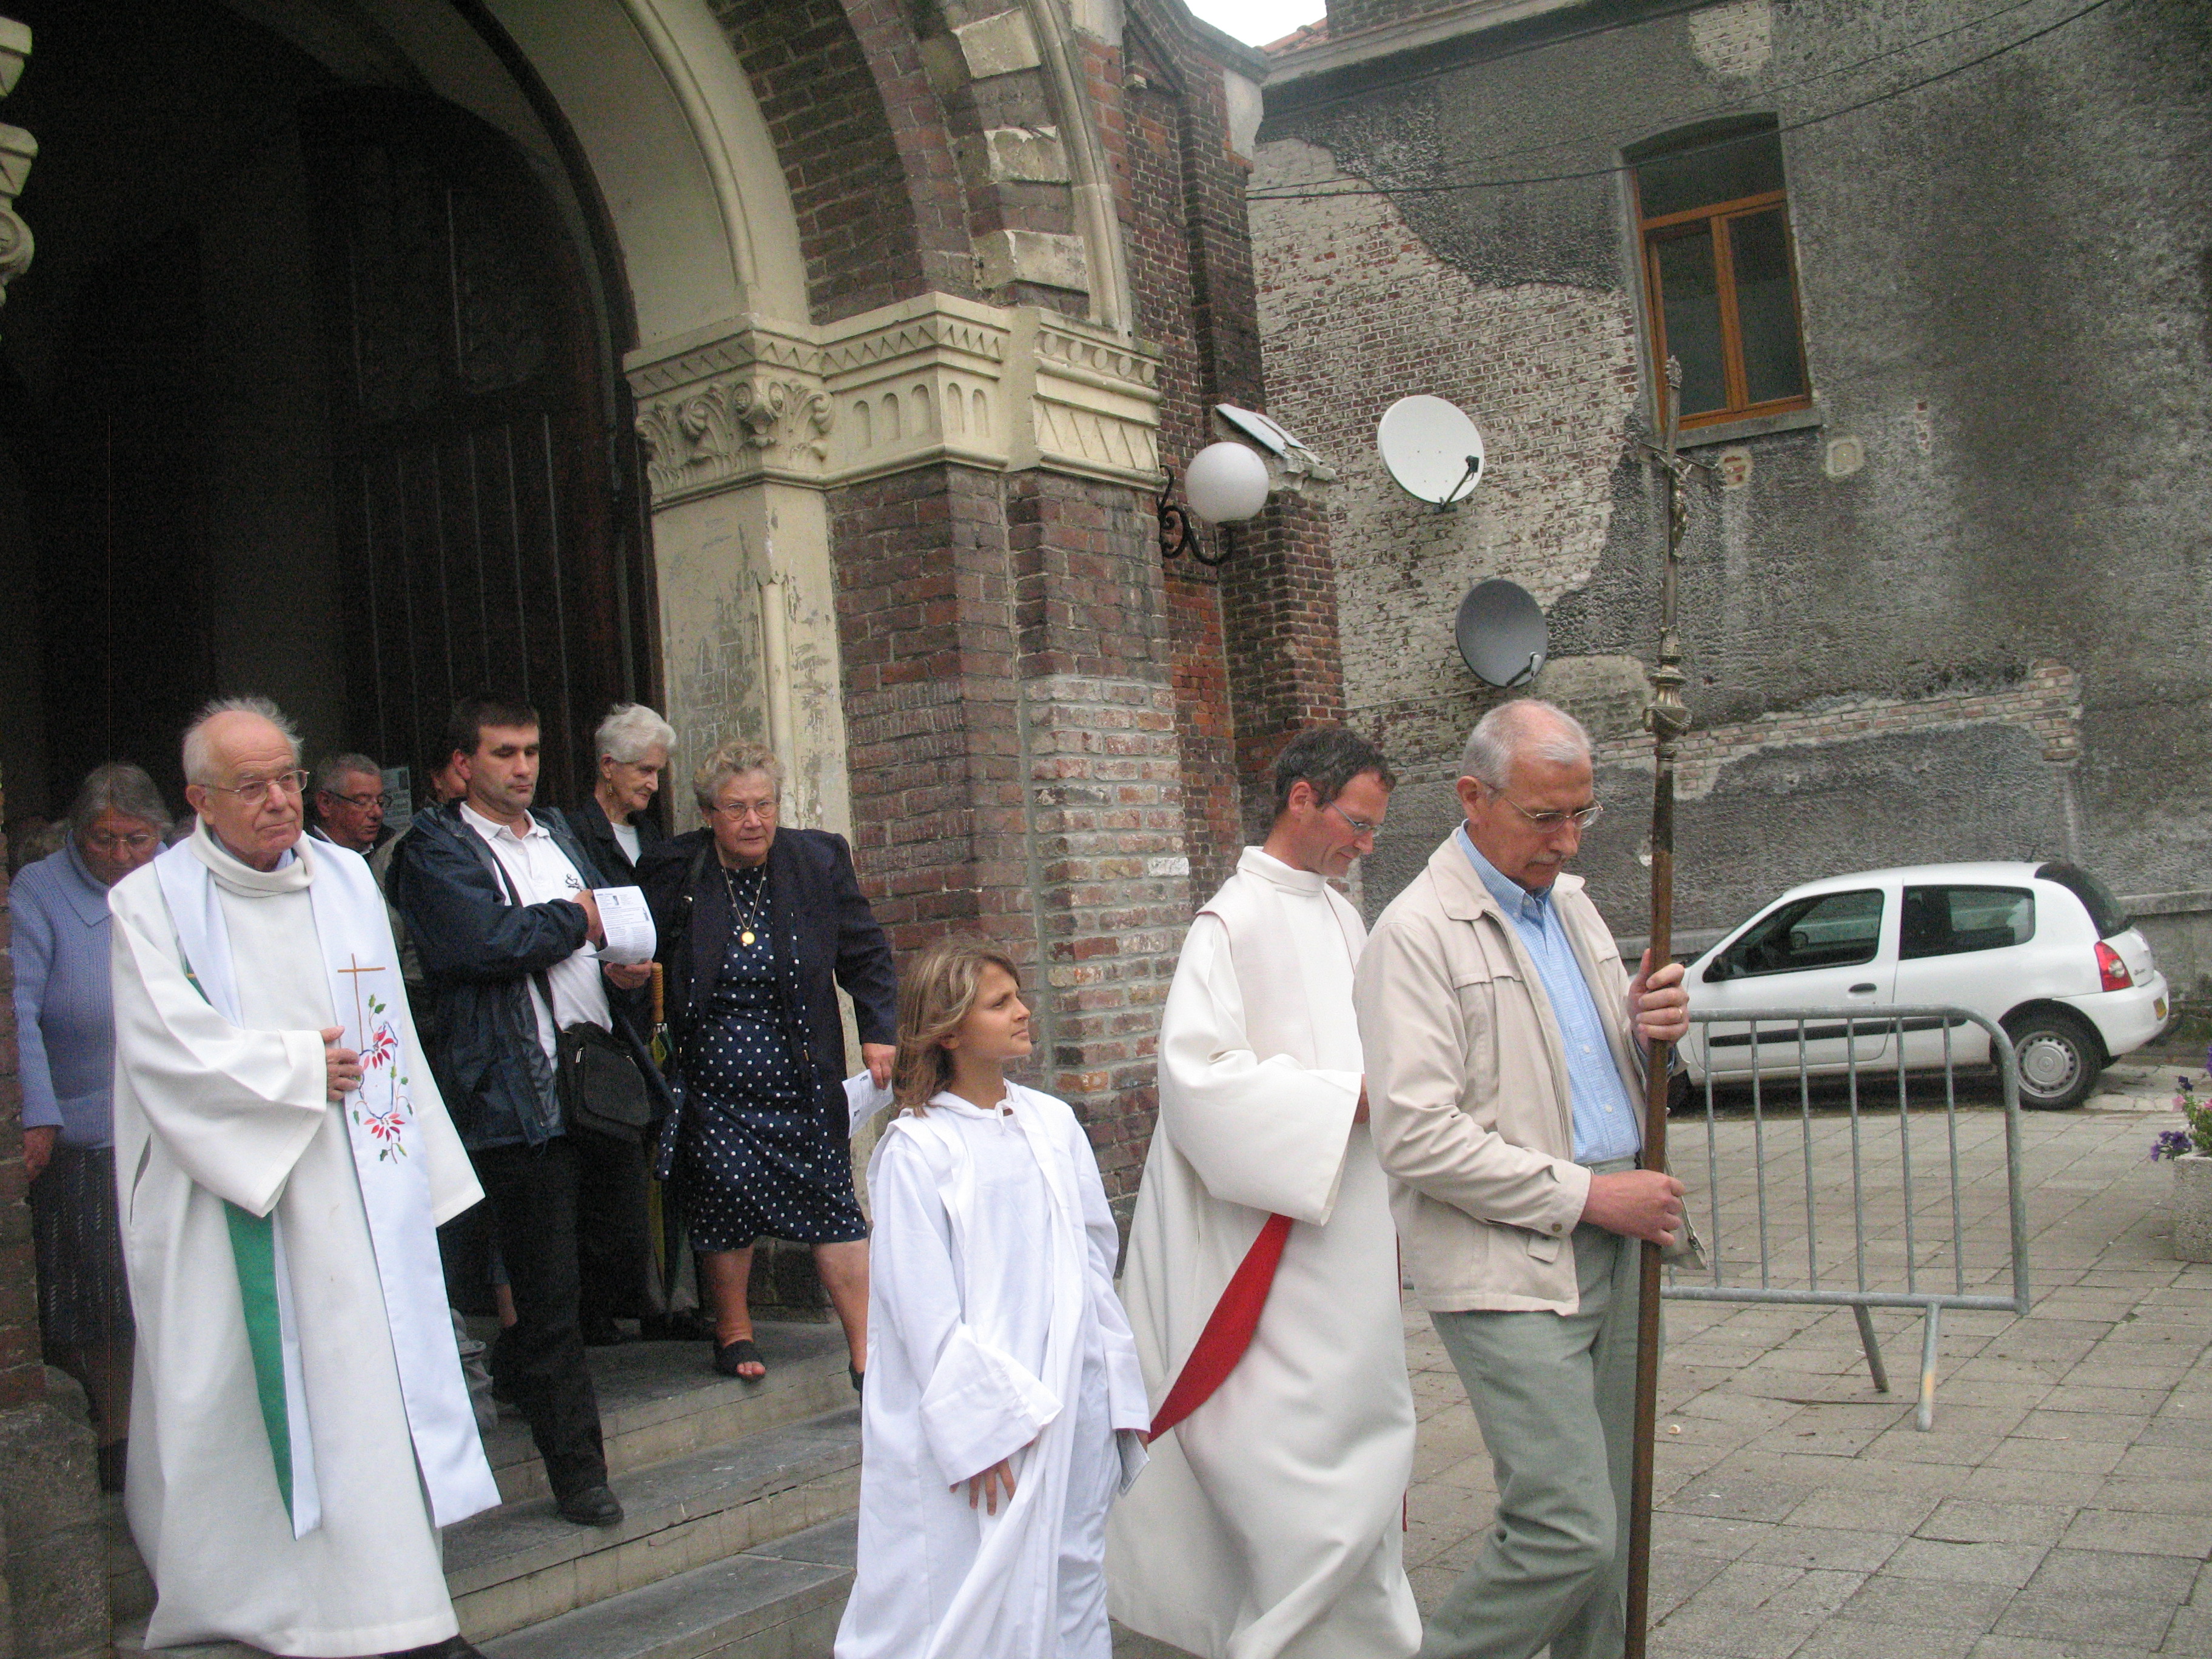 De l'église Notre-Dame à la chapelle Notre-Dame de Malaise.
Avec deux des prêtres de la paroisse : Jean Dubreucq et Christophe Decherf